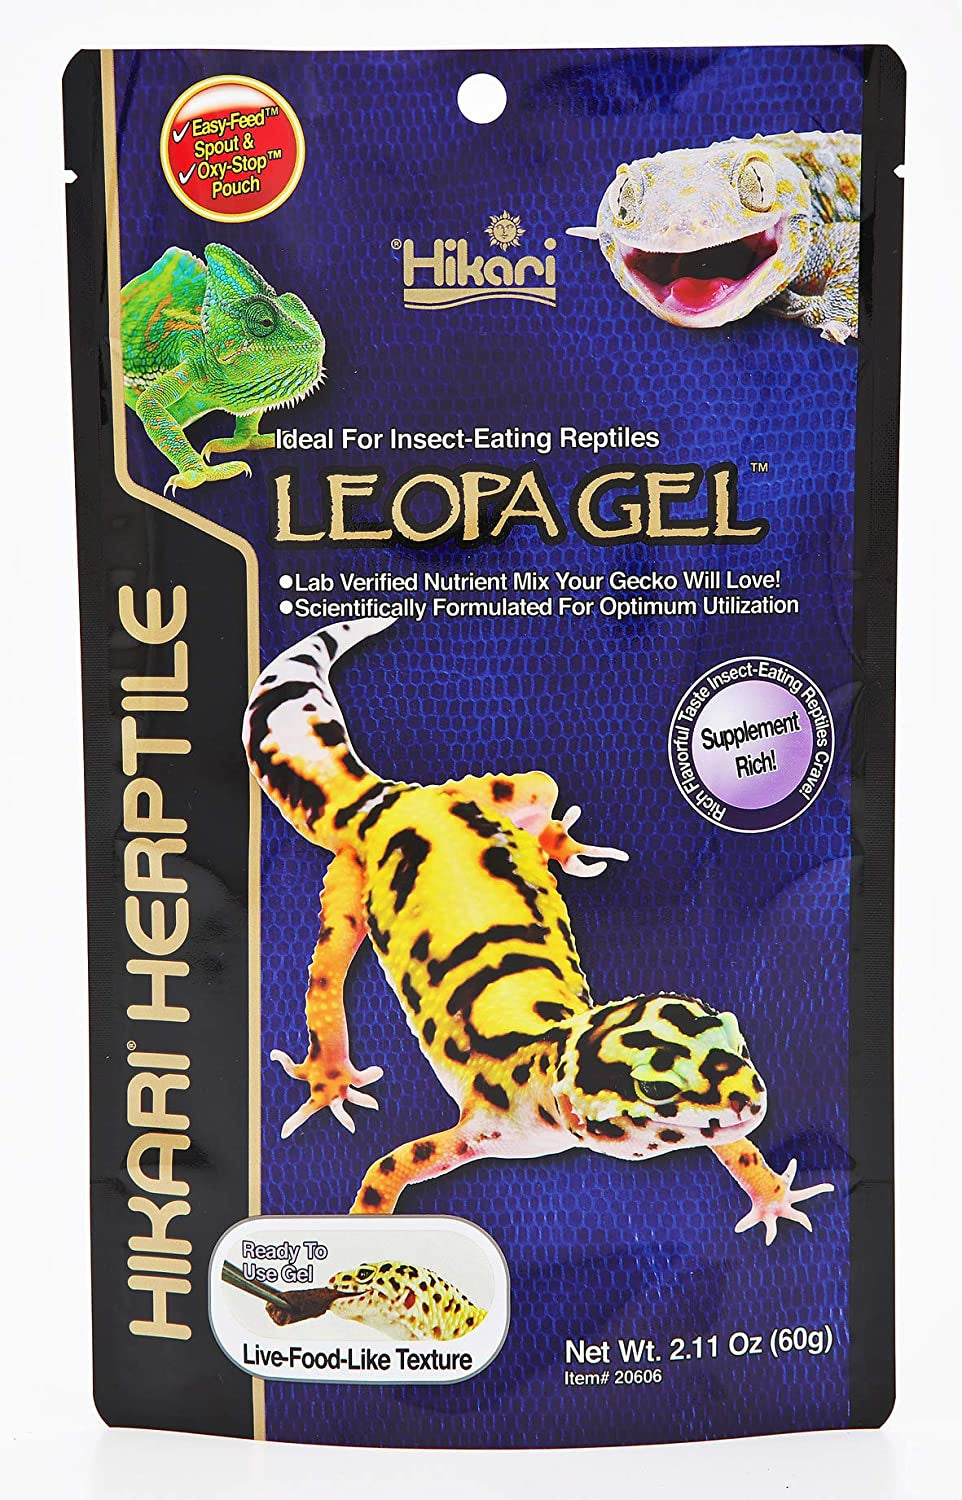 Hikari Herptile LeopaGel for Reptiles - PetMountain.com